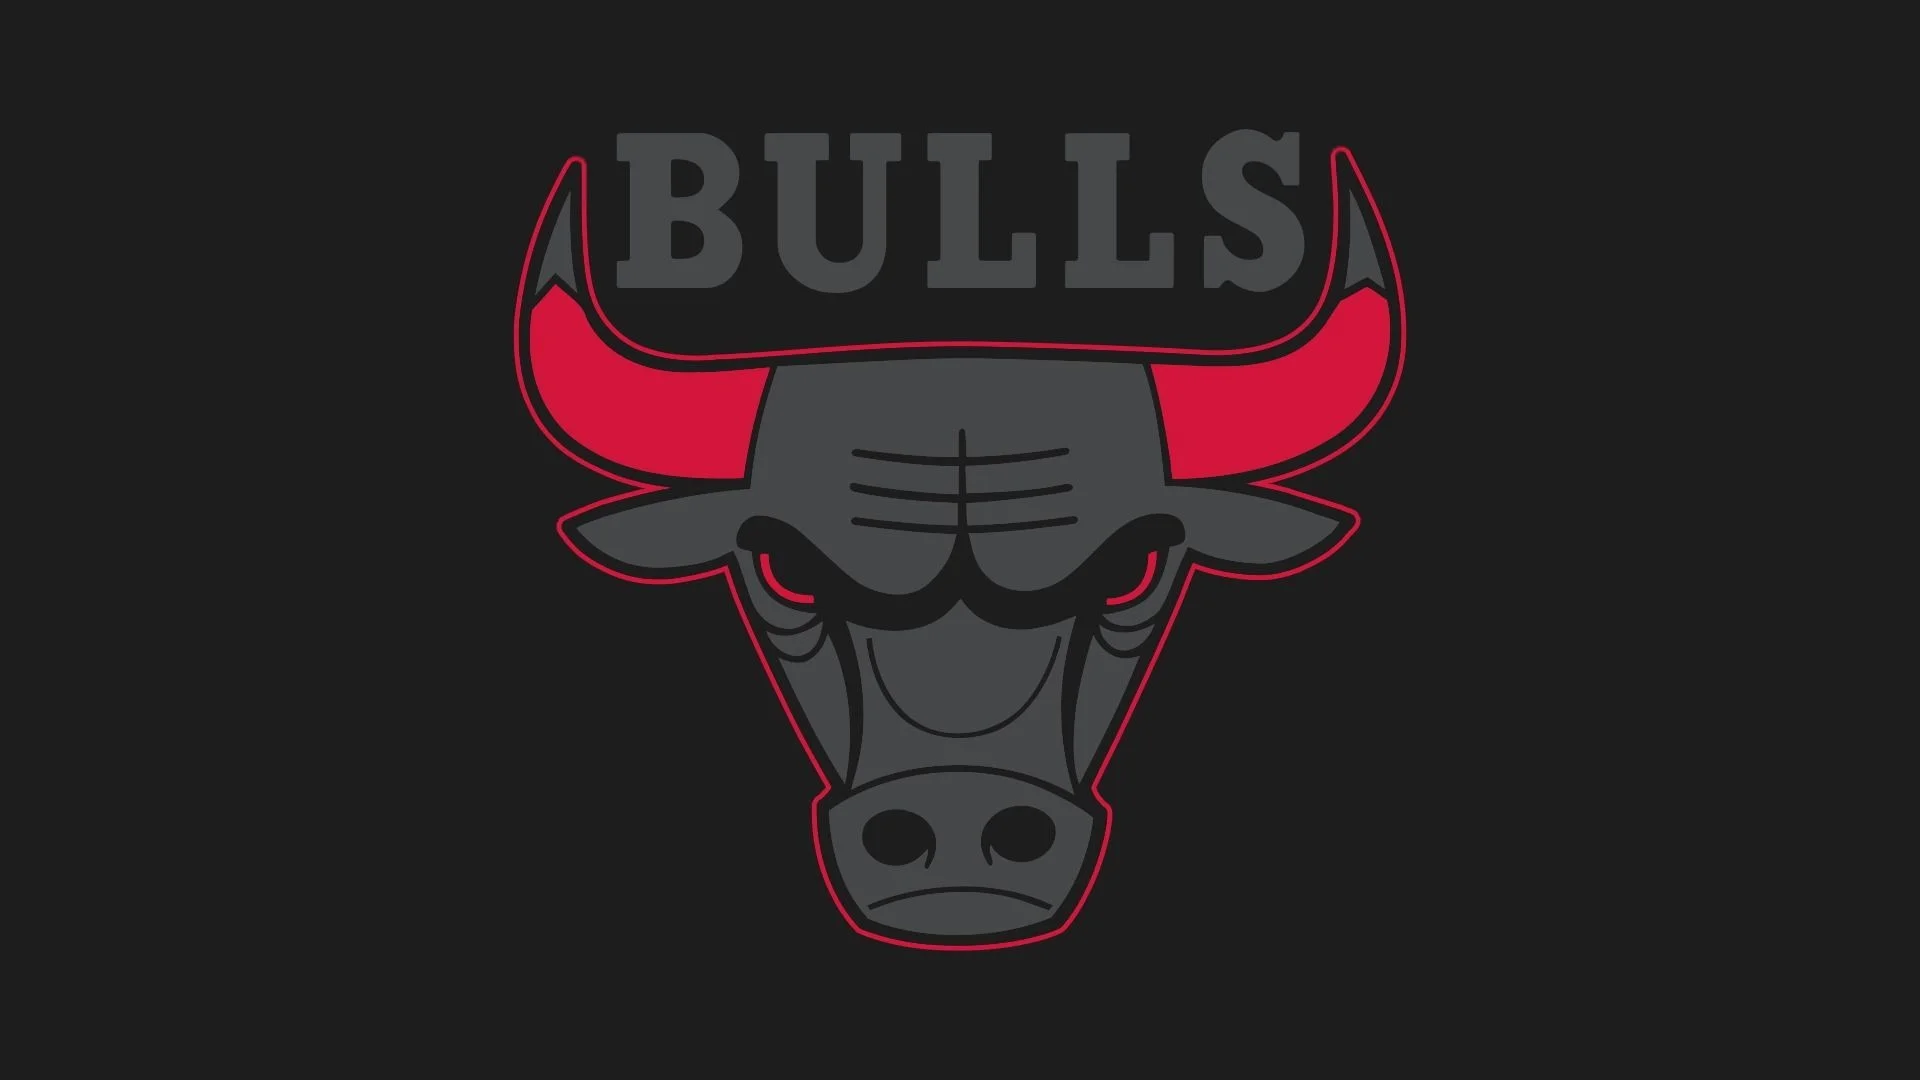 Logos Chicago Bulls Team 1 Logos Chicago Bulls Team 2 …